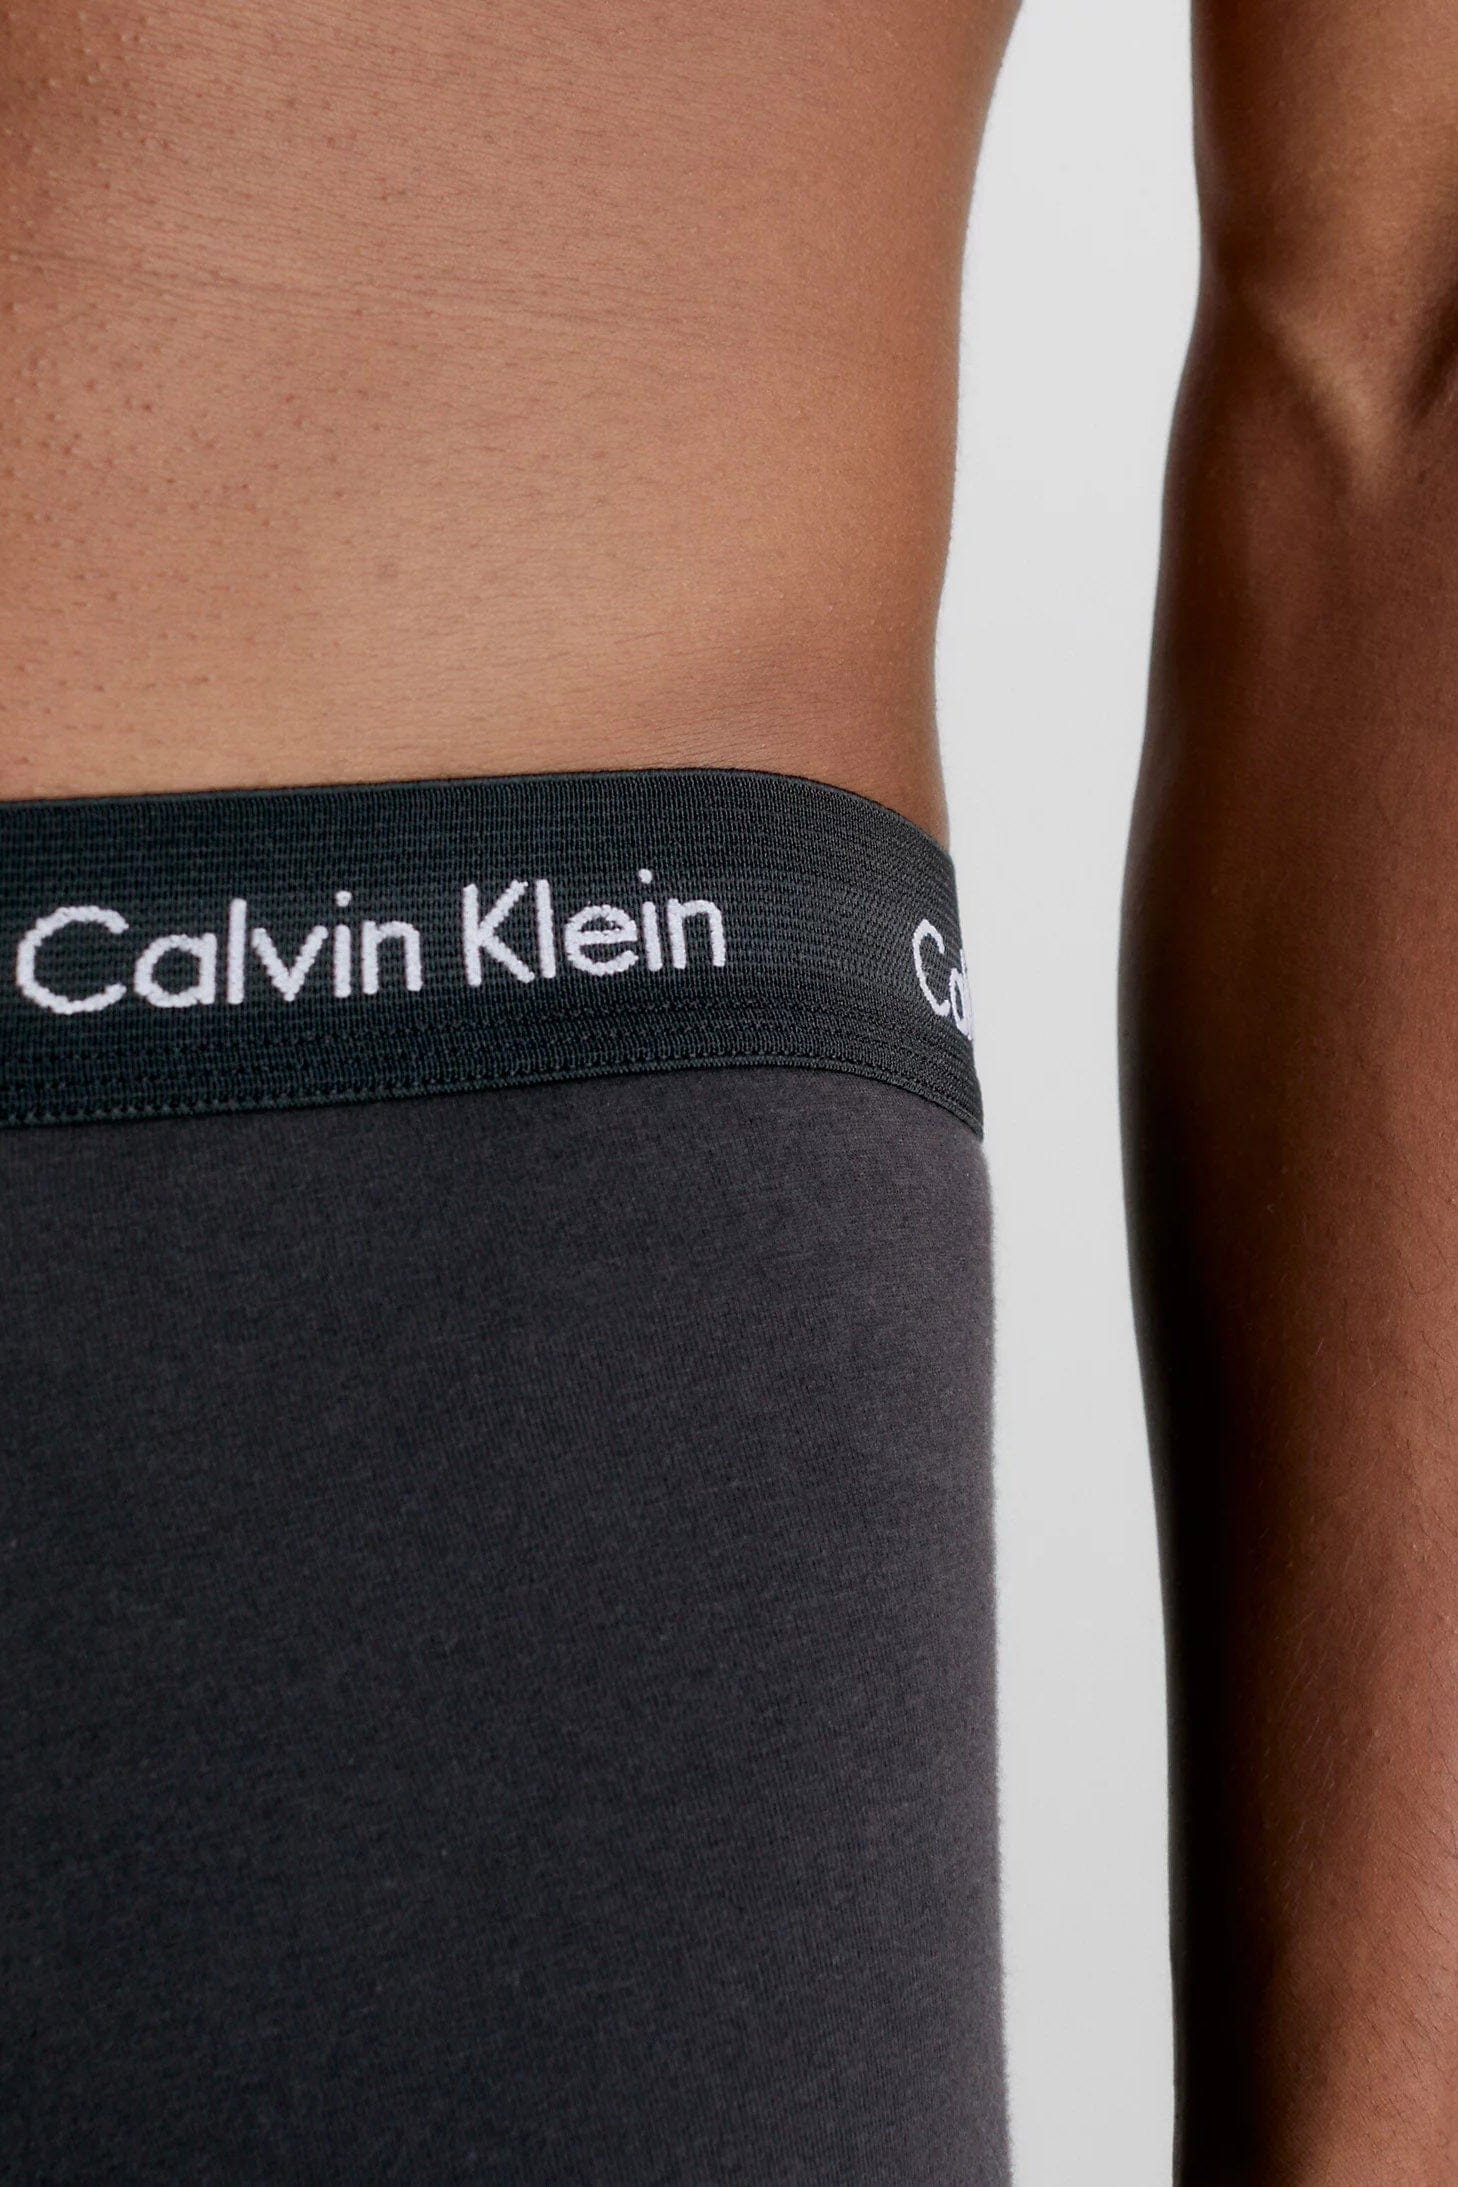 Buy Calvin Klein Cotton Stretch Boxer Briefs Three Pack from Next Austria